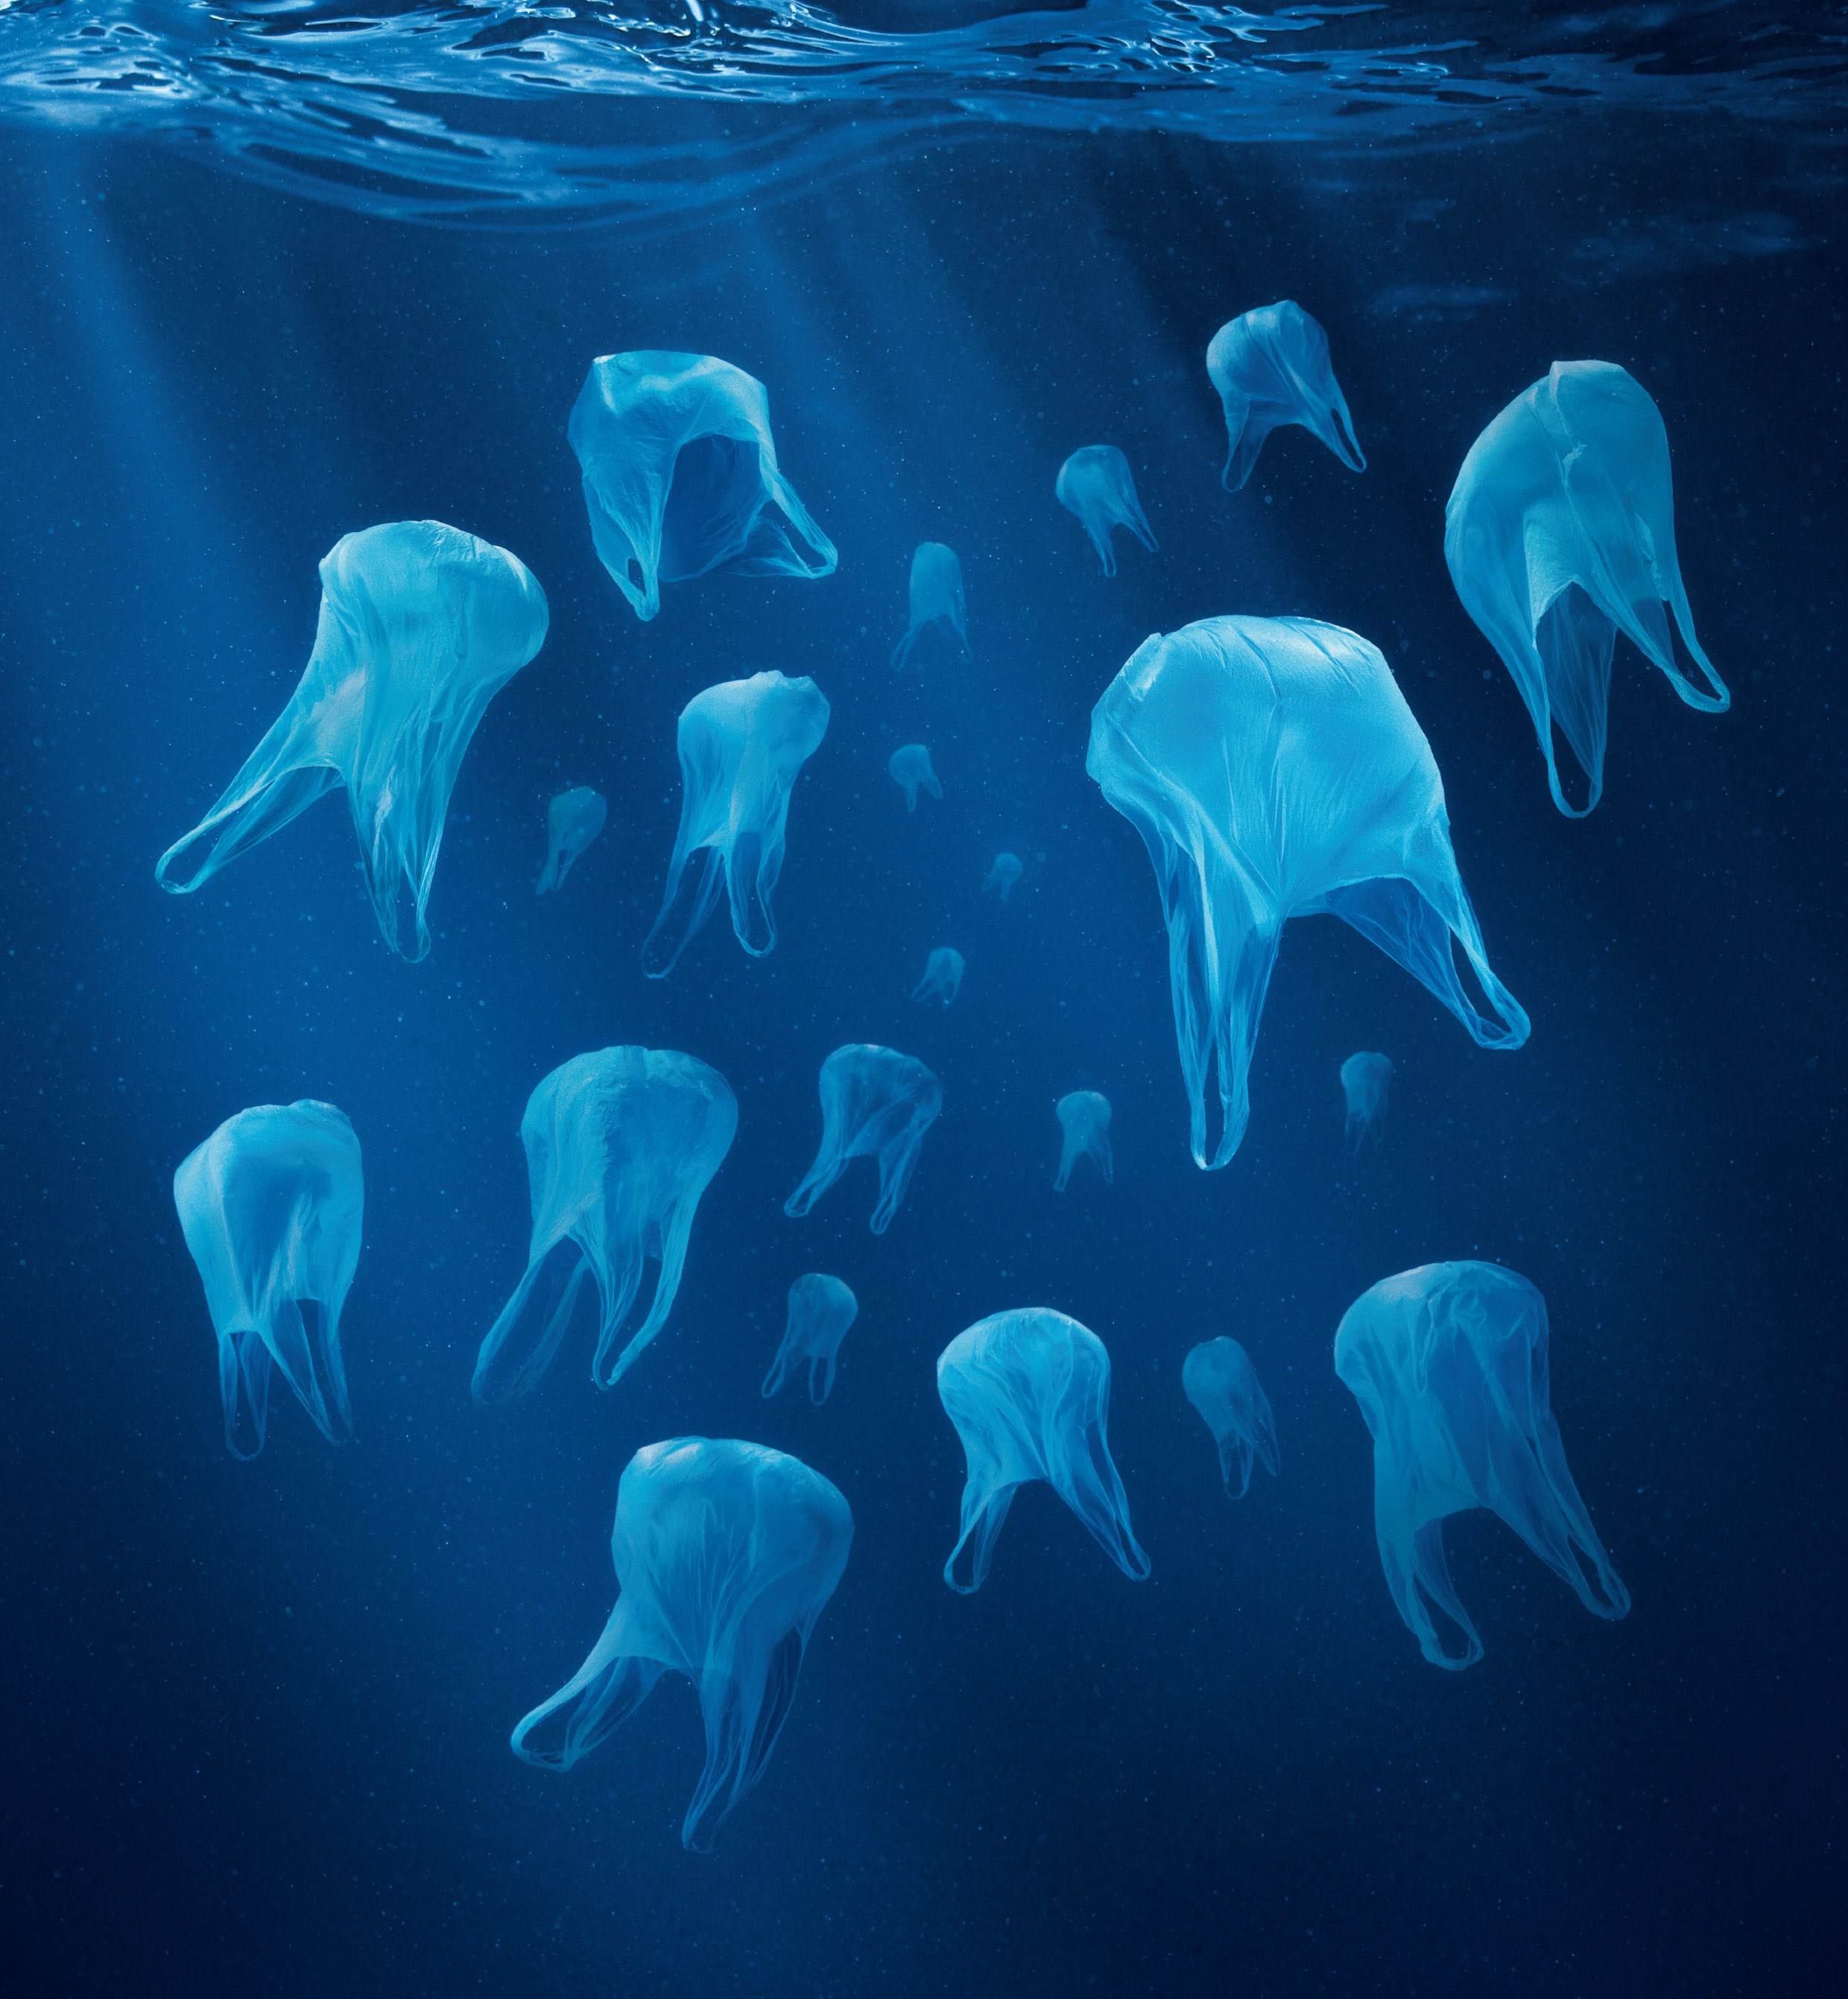 De nombreux organismes confondent les sachets flottants dans l'eau avec des méduses. Les macrodéchets (sacs, bouteilles, boîtes, etc.) ne constitueraient que 20 % de l'ensemble des objets en plastique flottant dans les océans. Ils se dégraderont un jour en micro- puis en nanoplastiques, causant alors des dégâts invisibles. Actuellement, 12 % des poissons de la mer du Nord porteraient des déchets dans l'estomac. Plus de 50 % d'entre eux seraient des plastiques. © Surfrider Foundation